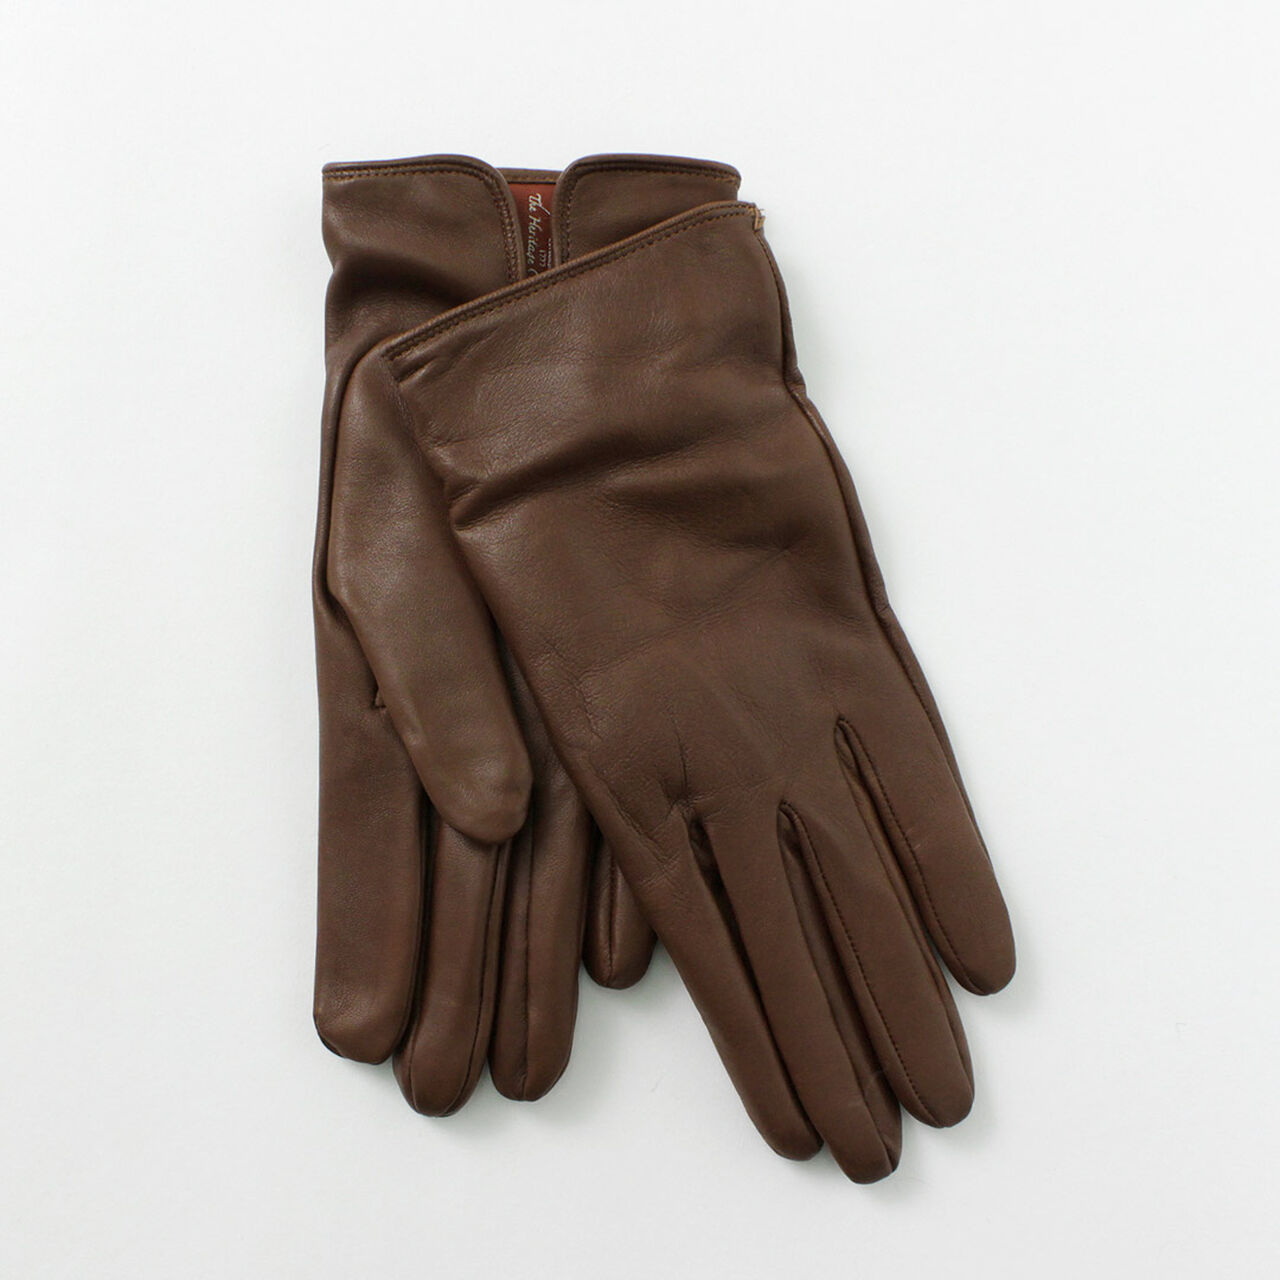 Bisley / Cashmere-lined leather gloves,EnglishTan_Black, large image number 0